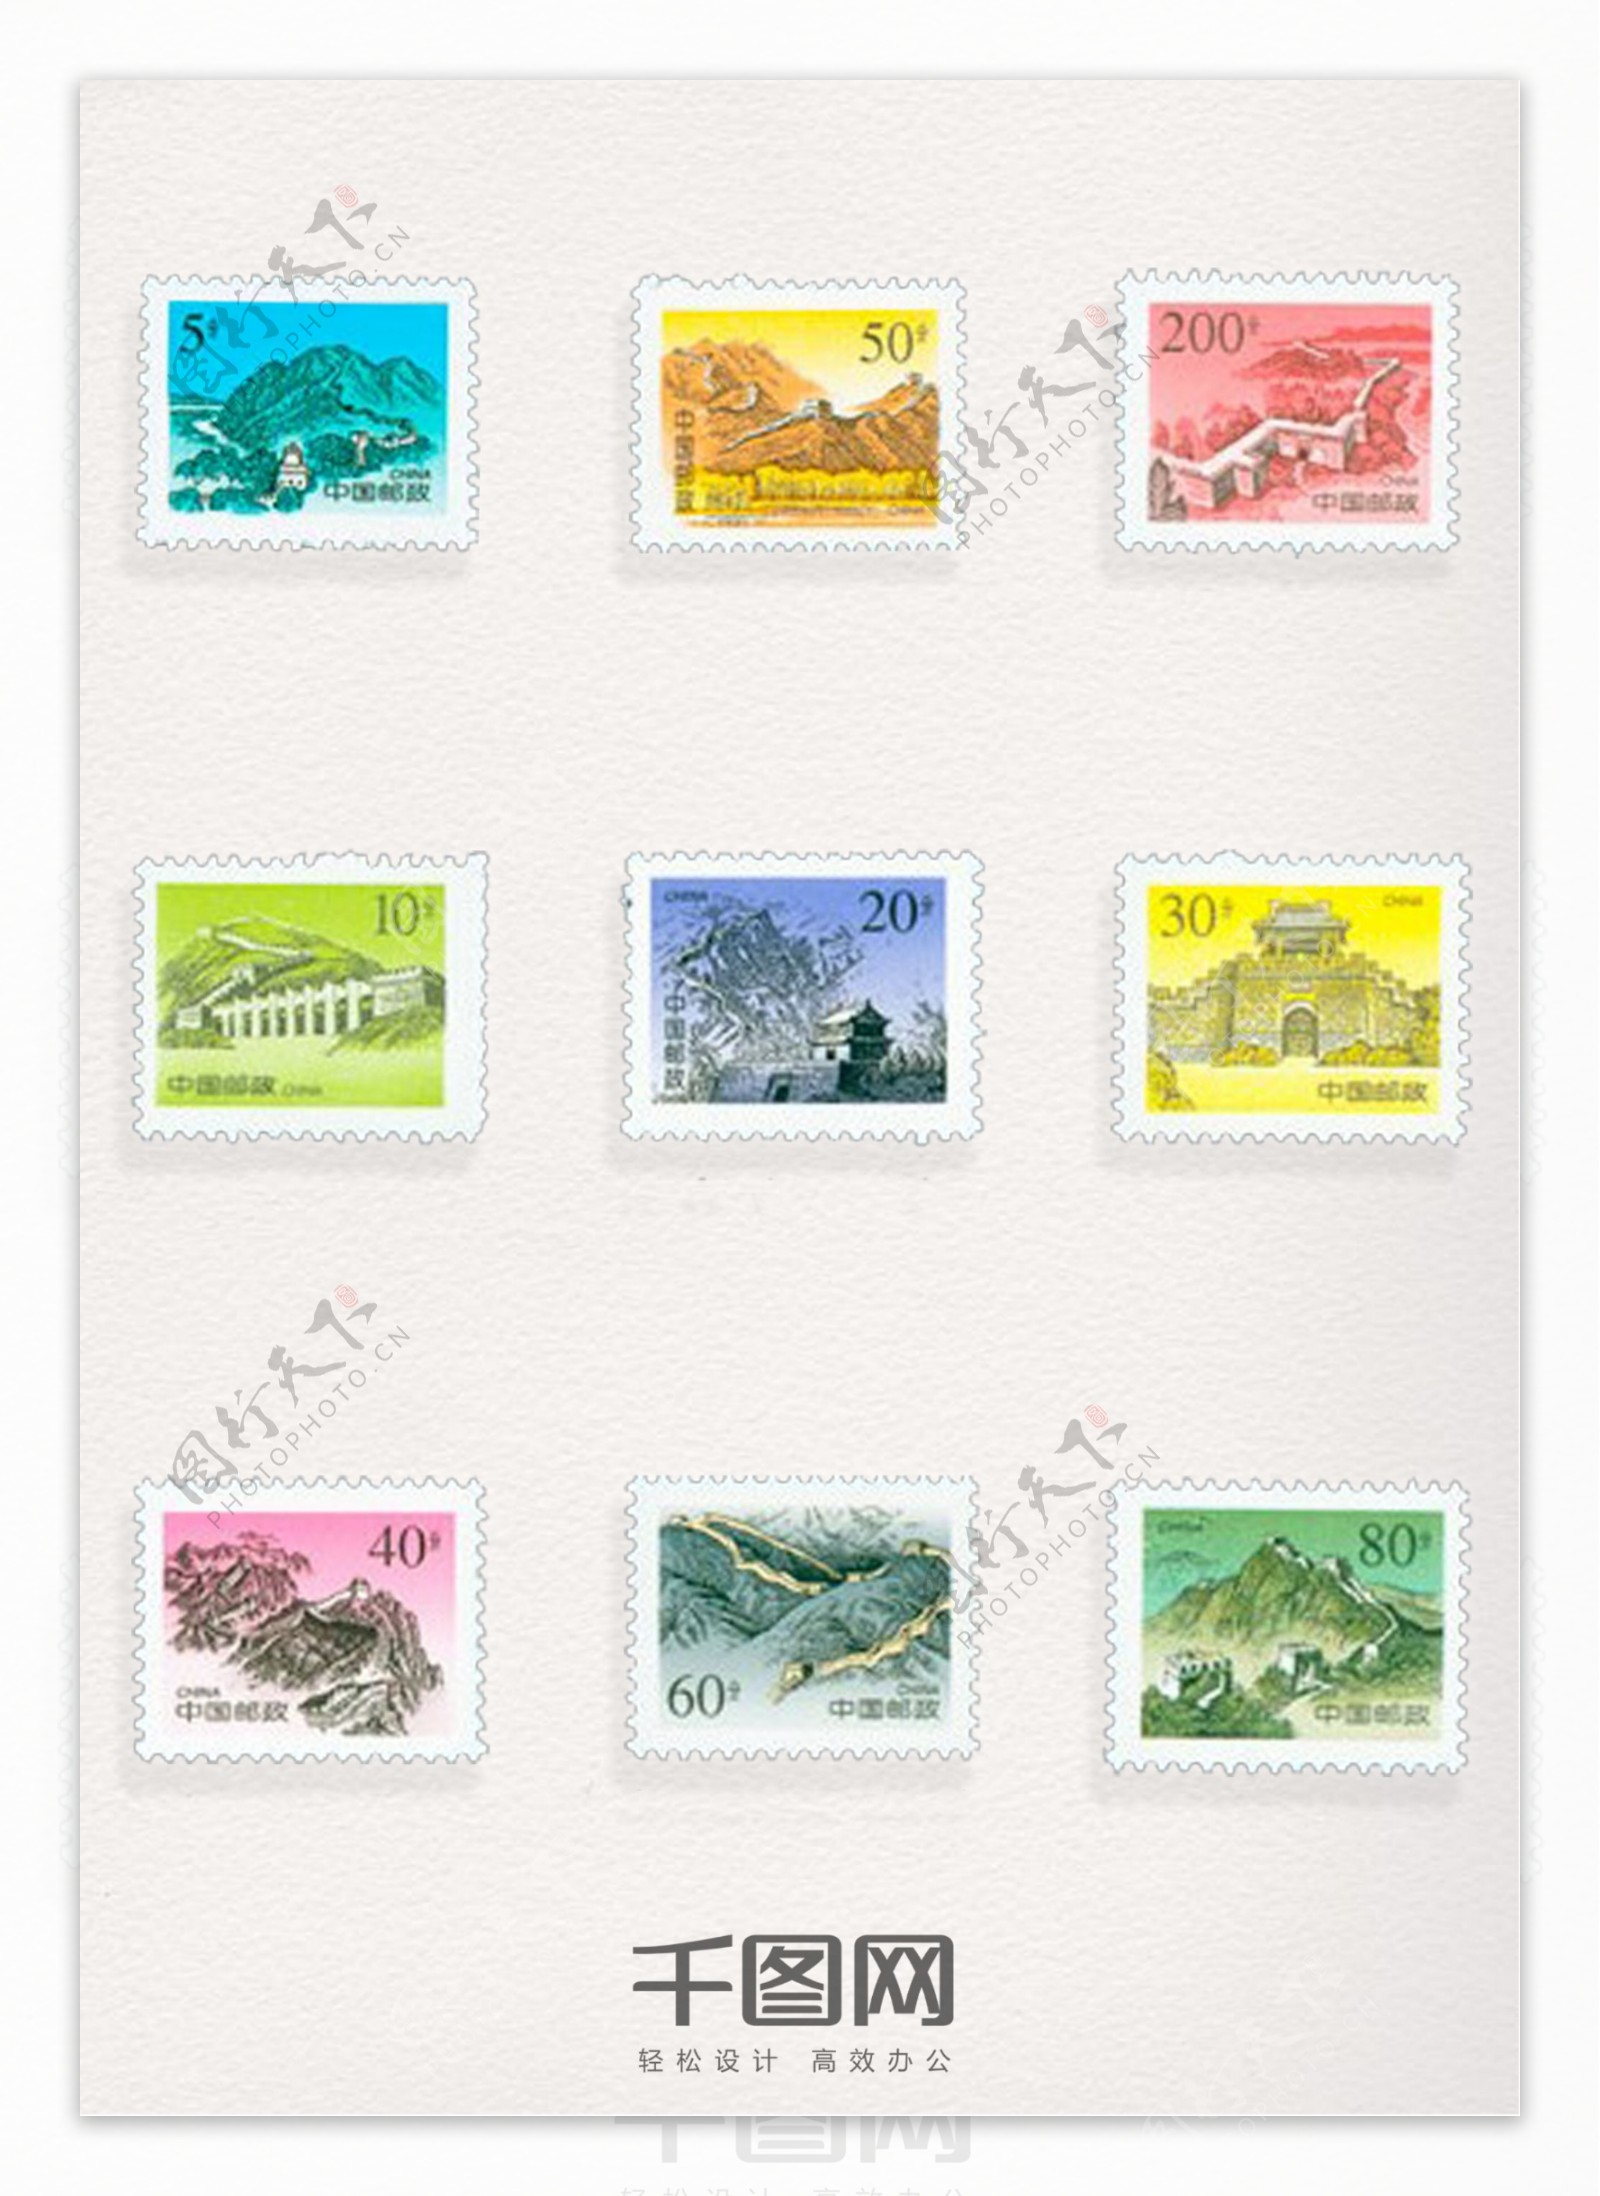 彩色长城邮票系列图案元素装饰